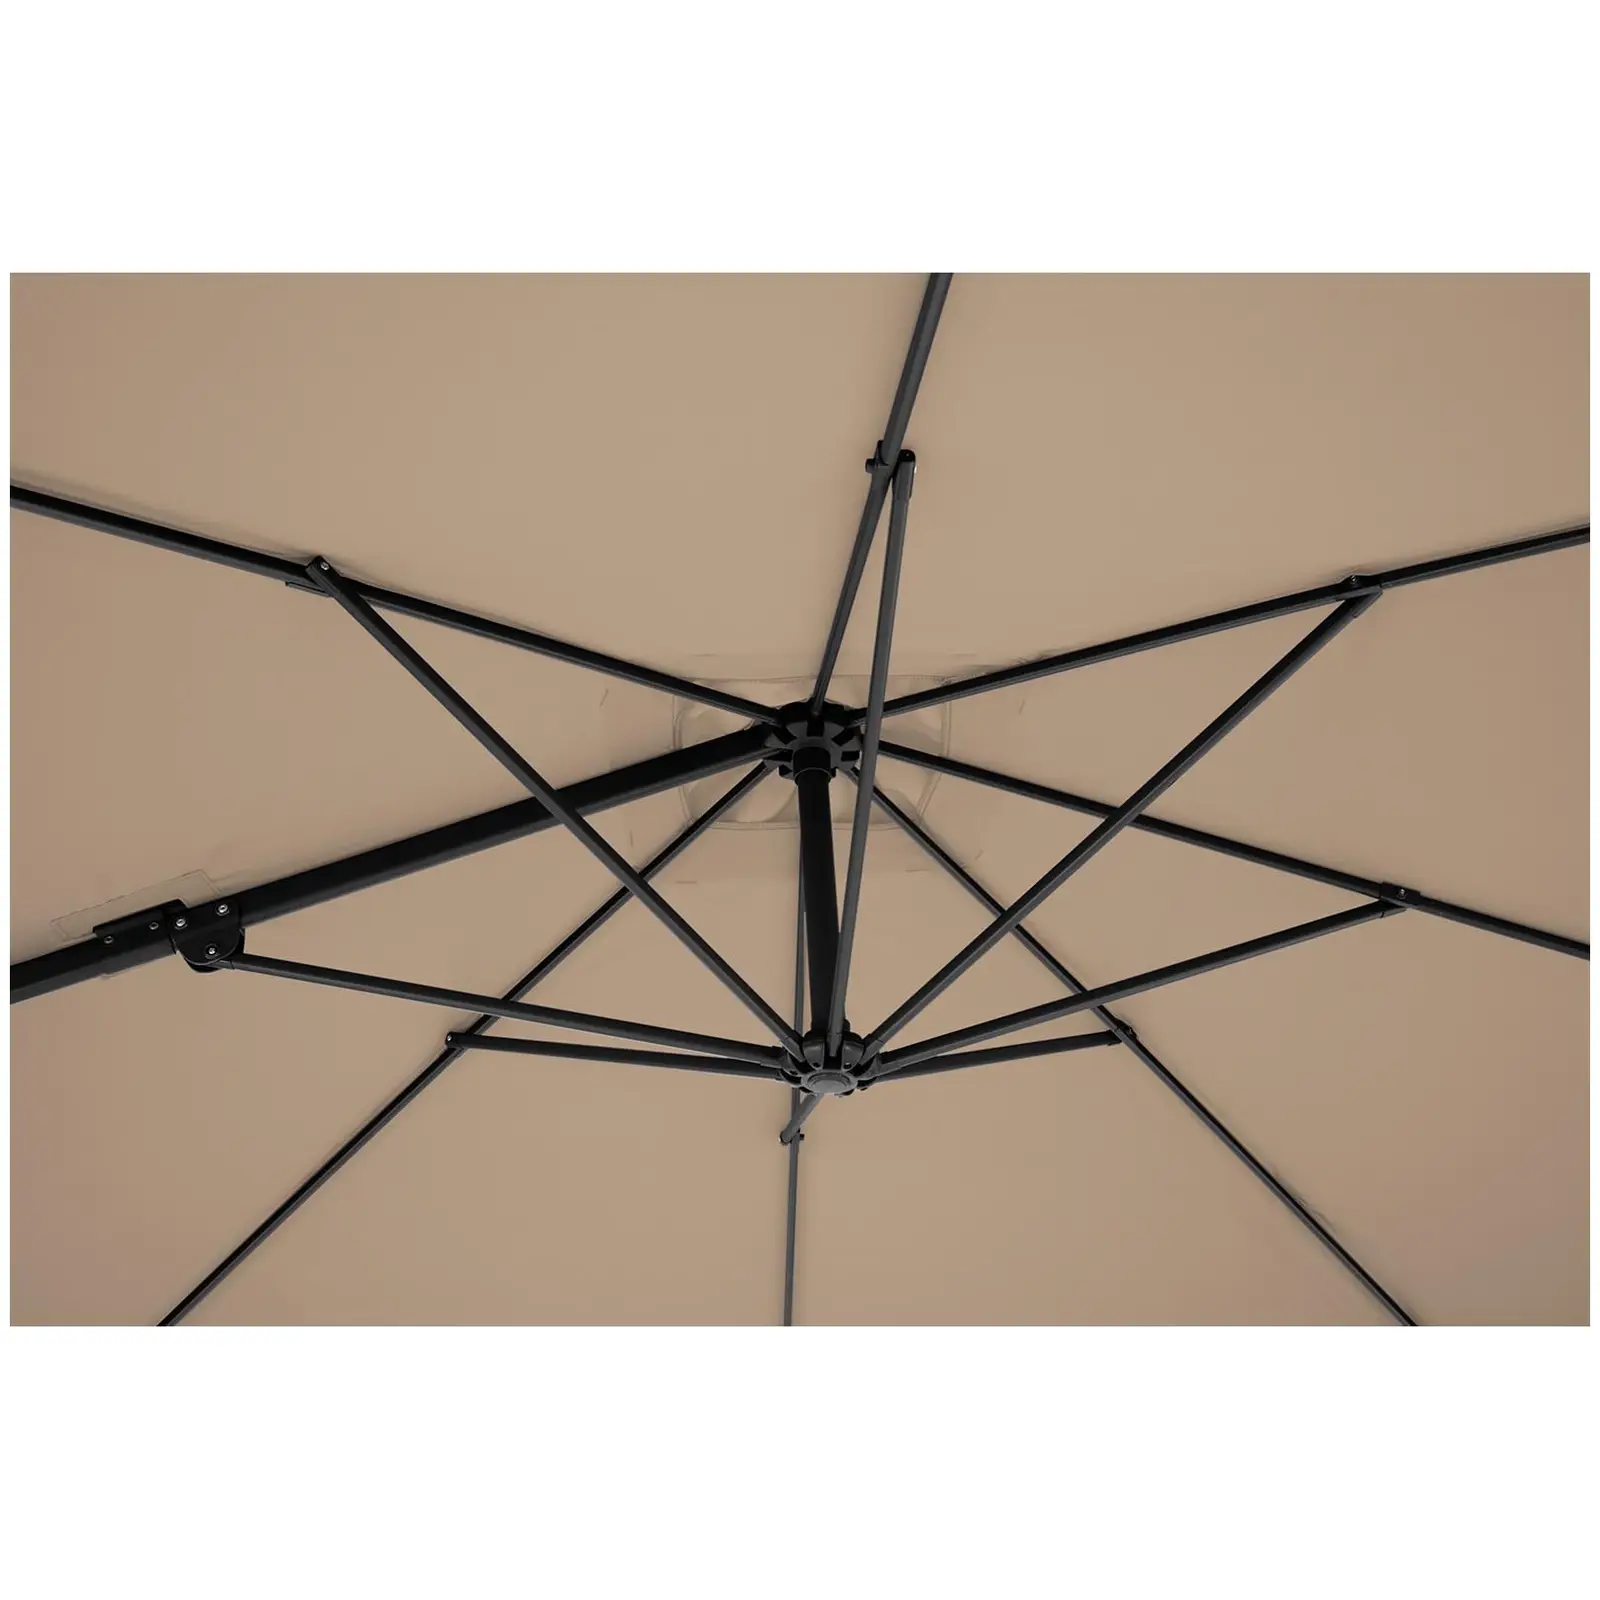 B-zboží Boční slunečník - šedohnědý - čtvercový - 250 x 250 cm - naklápěcí a otočný